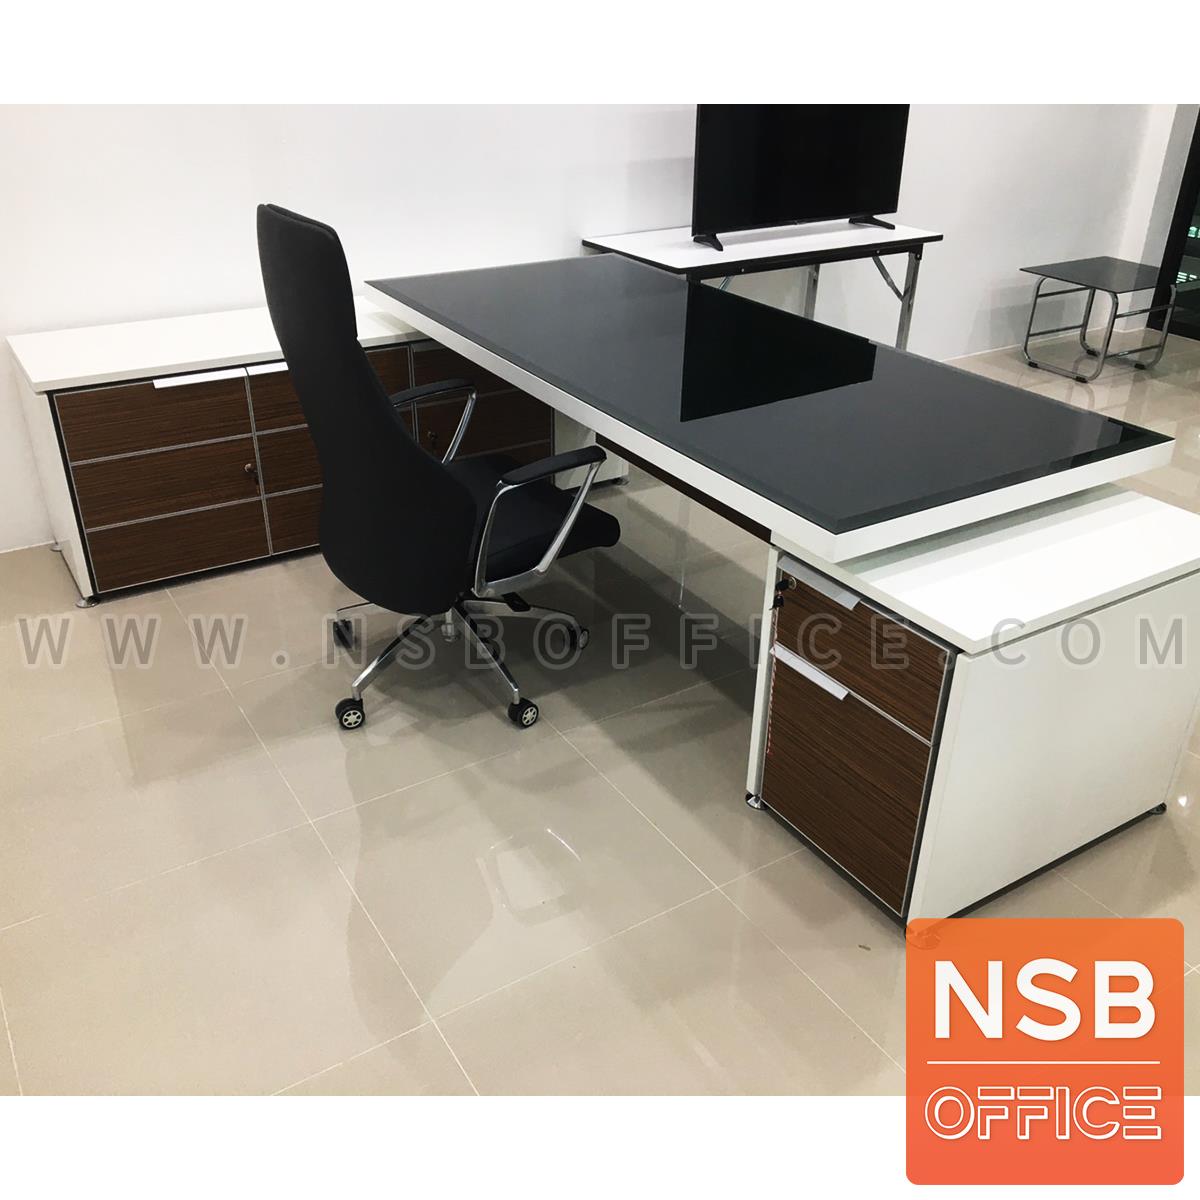 โต๊ะทำงานตัวแอลหน้ากระจก  รุ่น Nextline (เน็กซ์ไลน์) ขนาด 258W cm. สีซีบราโน่-ขาว